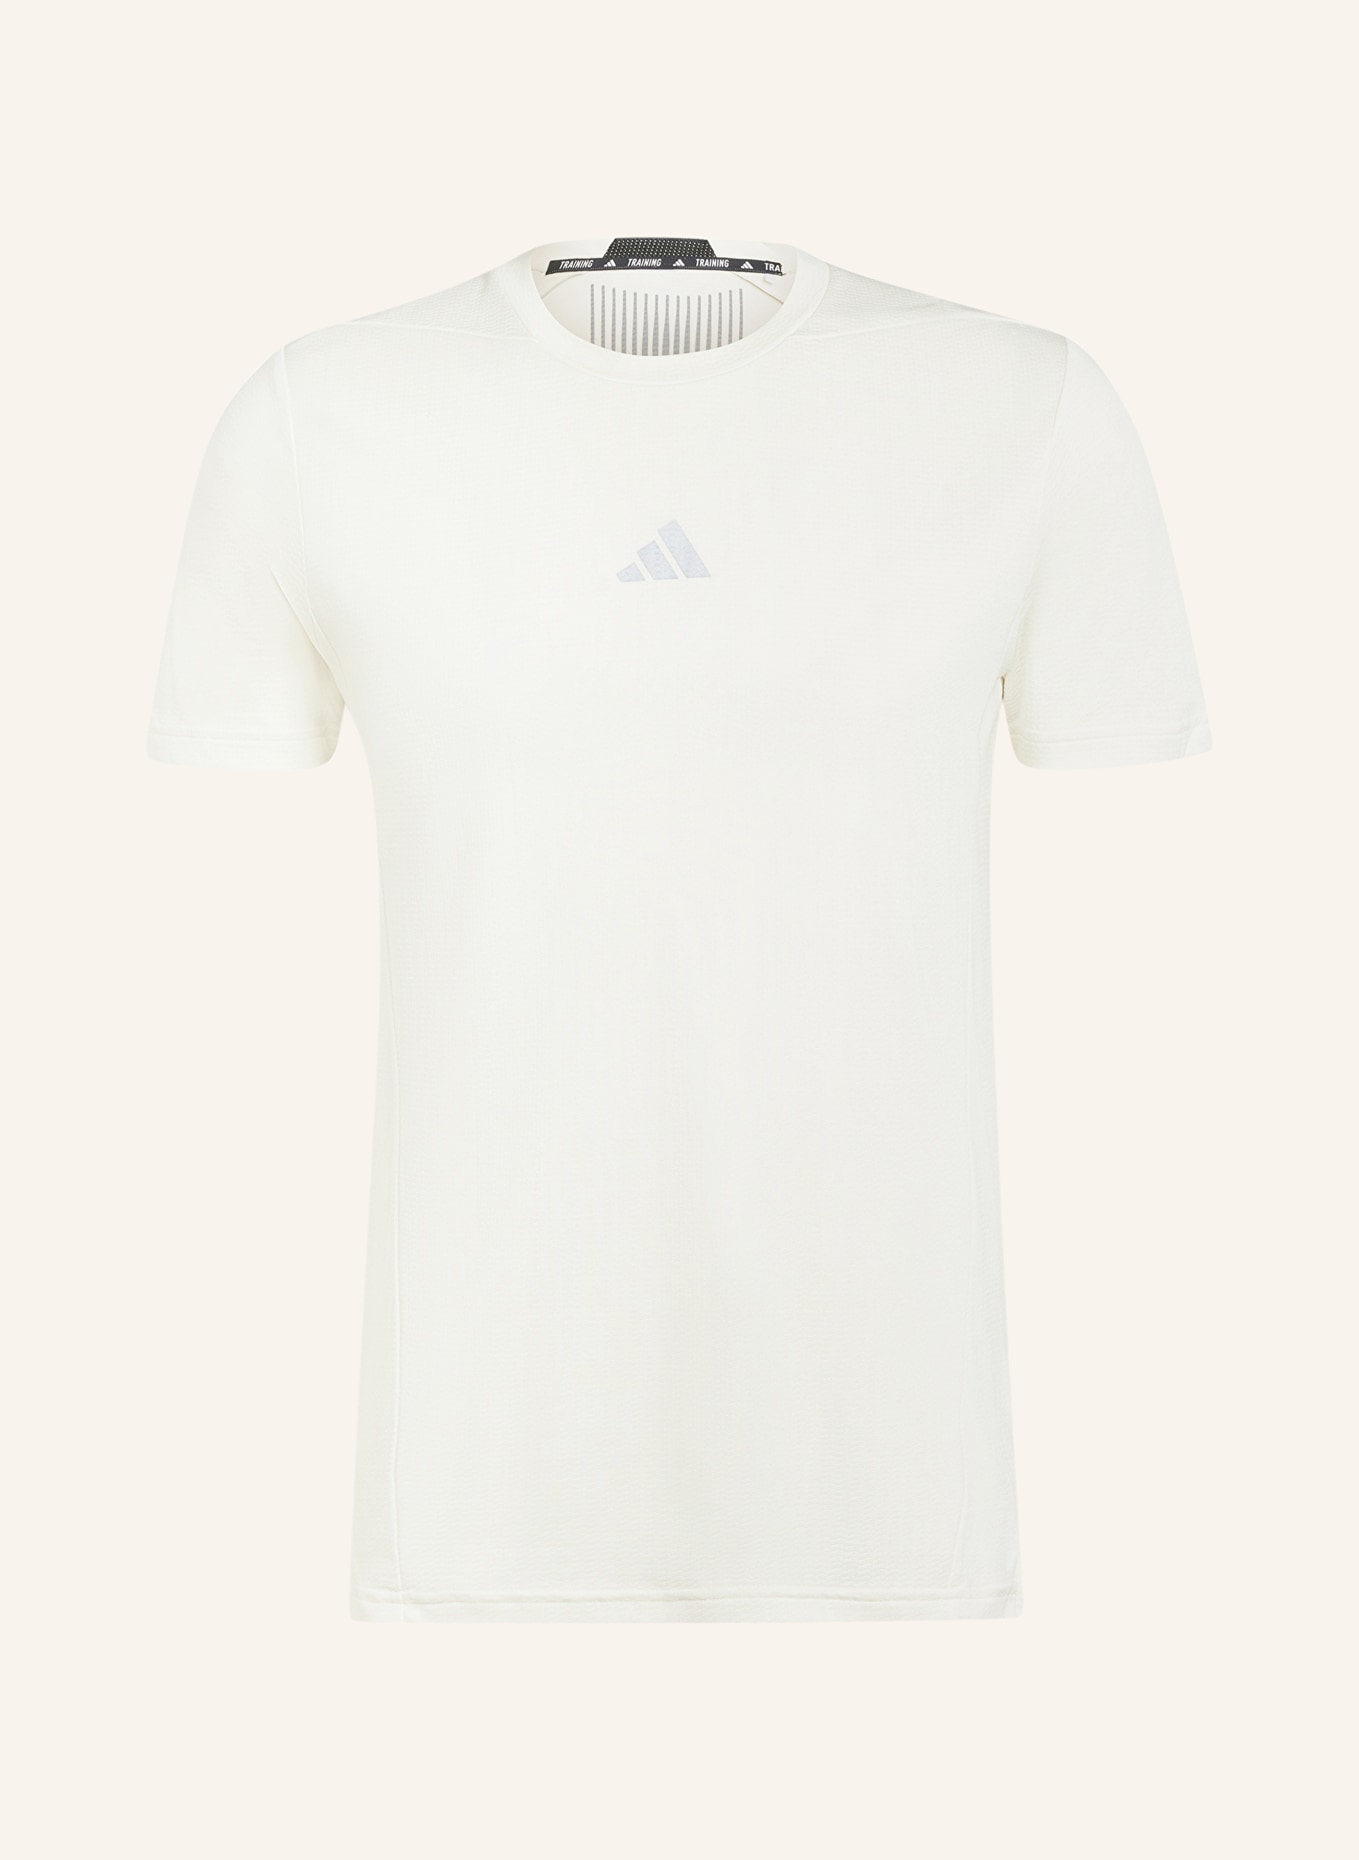 adidas T-shirt DESIGNED FOR TRAINING, Color: ECRU (Image 1)